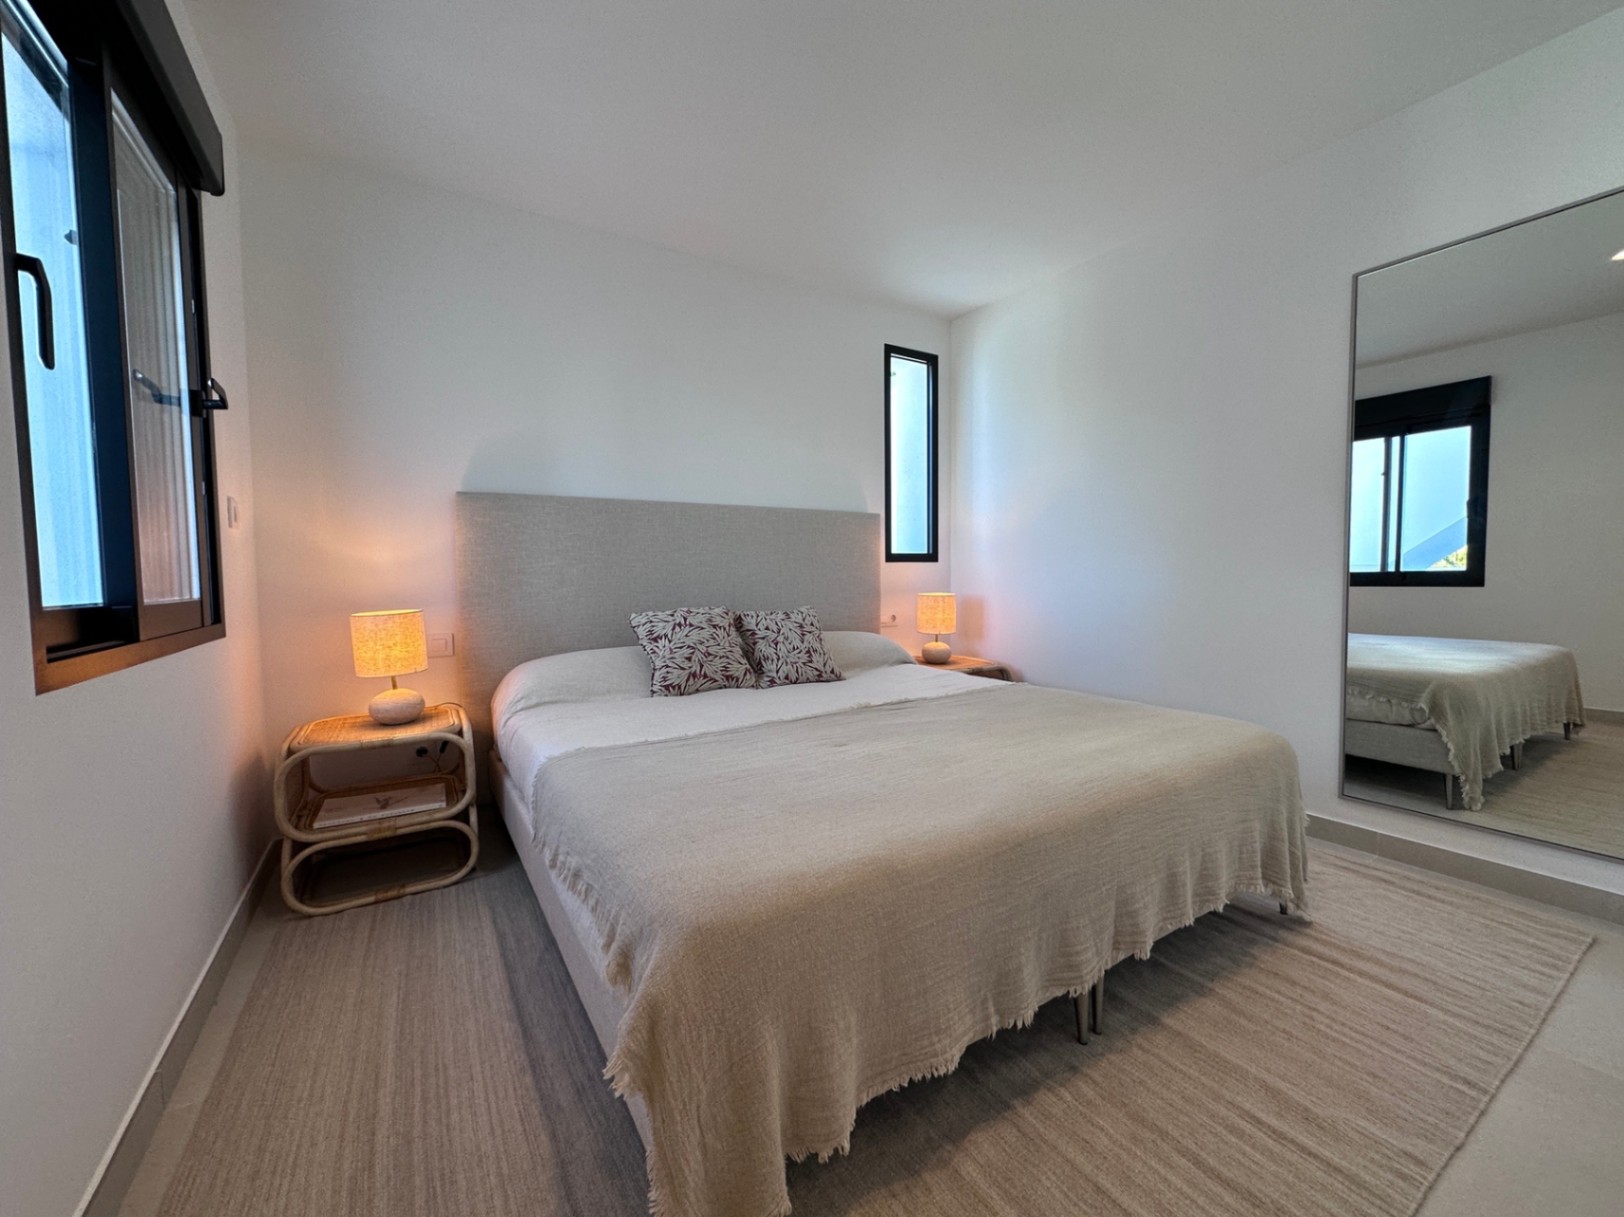 Chalet de 4 dormitorios totalmente reformado con vistas espectaculares en venta en Jávea